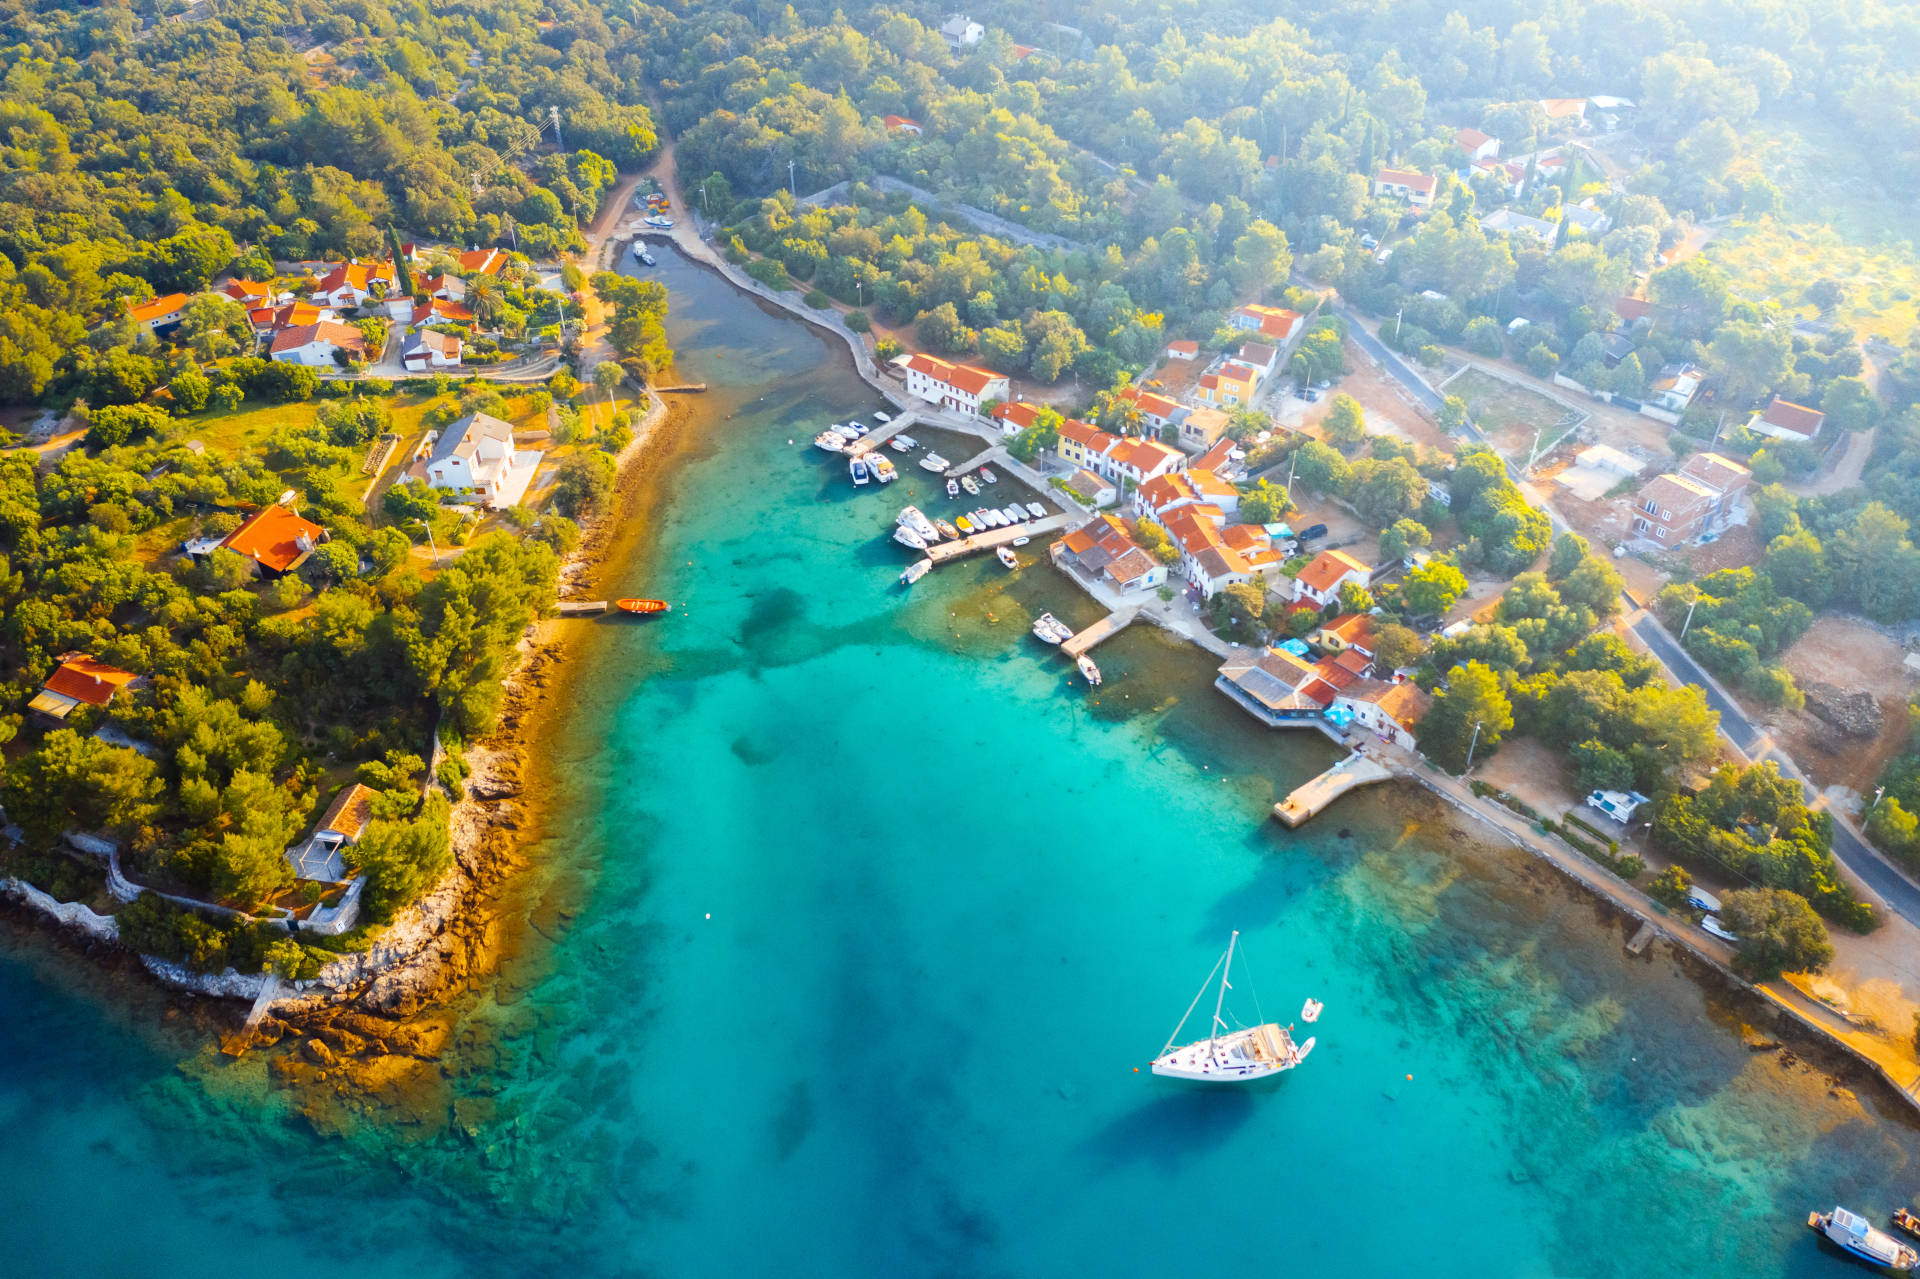 Island Cres in North Adriatic Region in Croatia